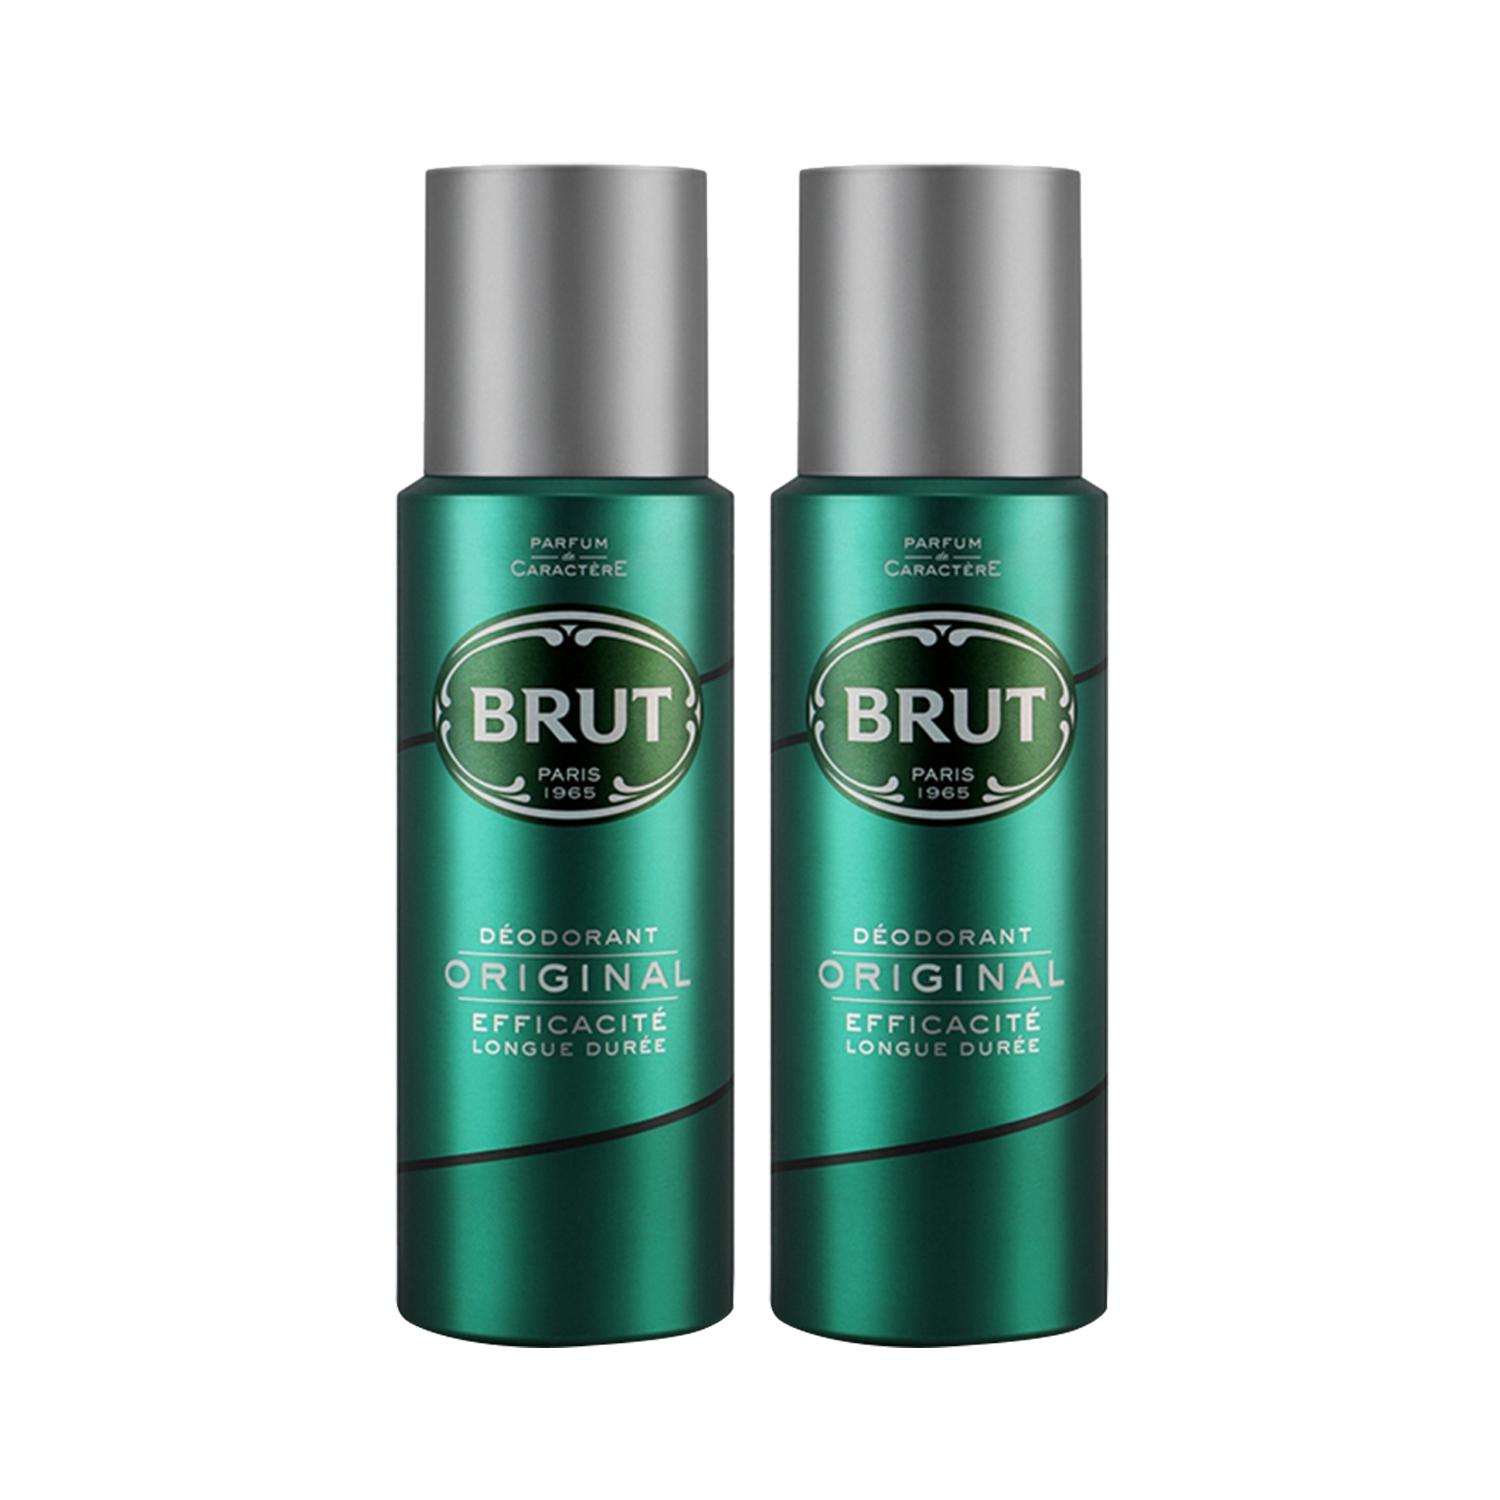 Brut | Brut Original Deodorant Spray (200 ml) & Original Deodorant Spray (200 ml) Combo